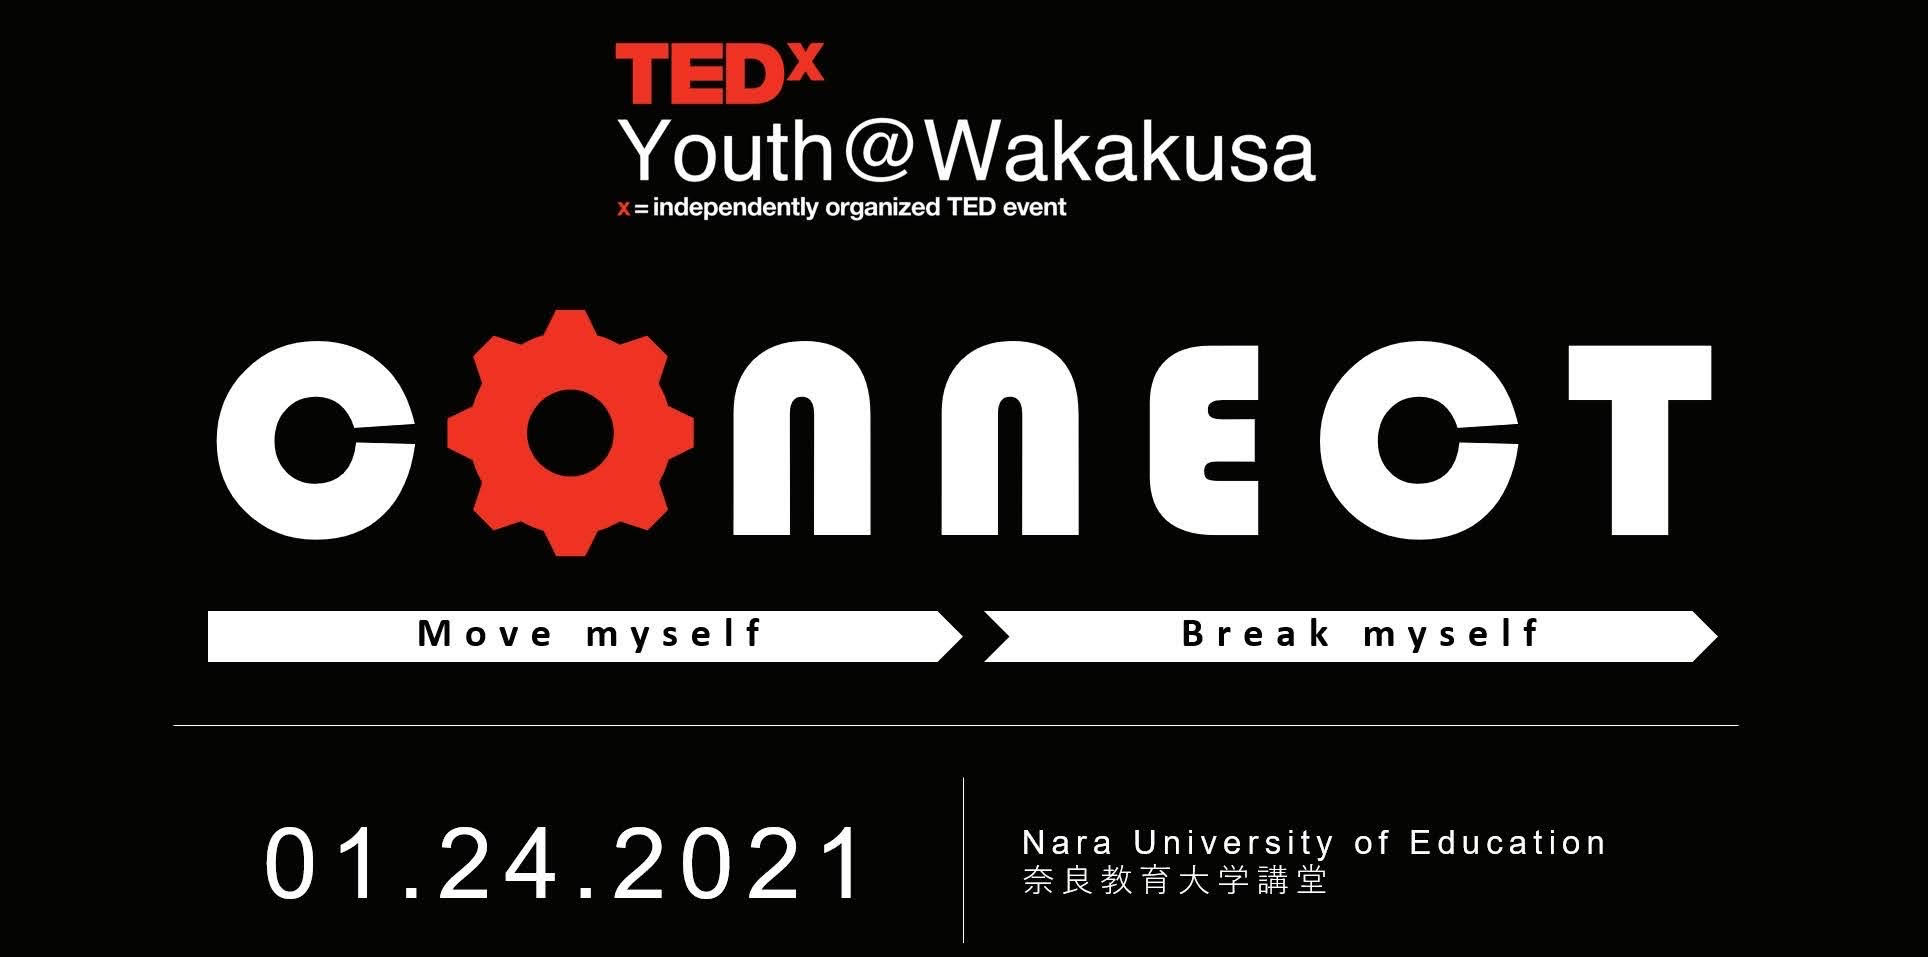 【コロナ禍だからこそやる、奈良で初開催のTEDxイベント】TEDxYouth@Wakakusa